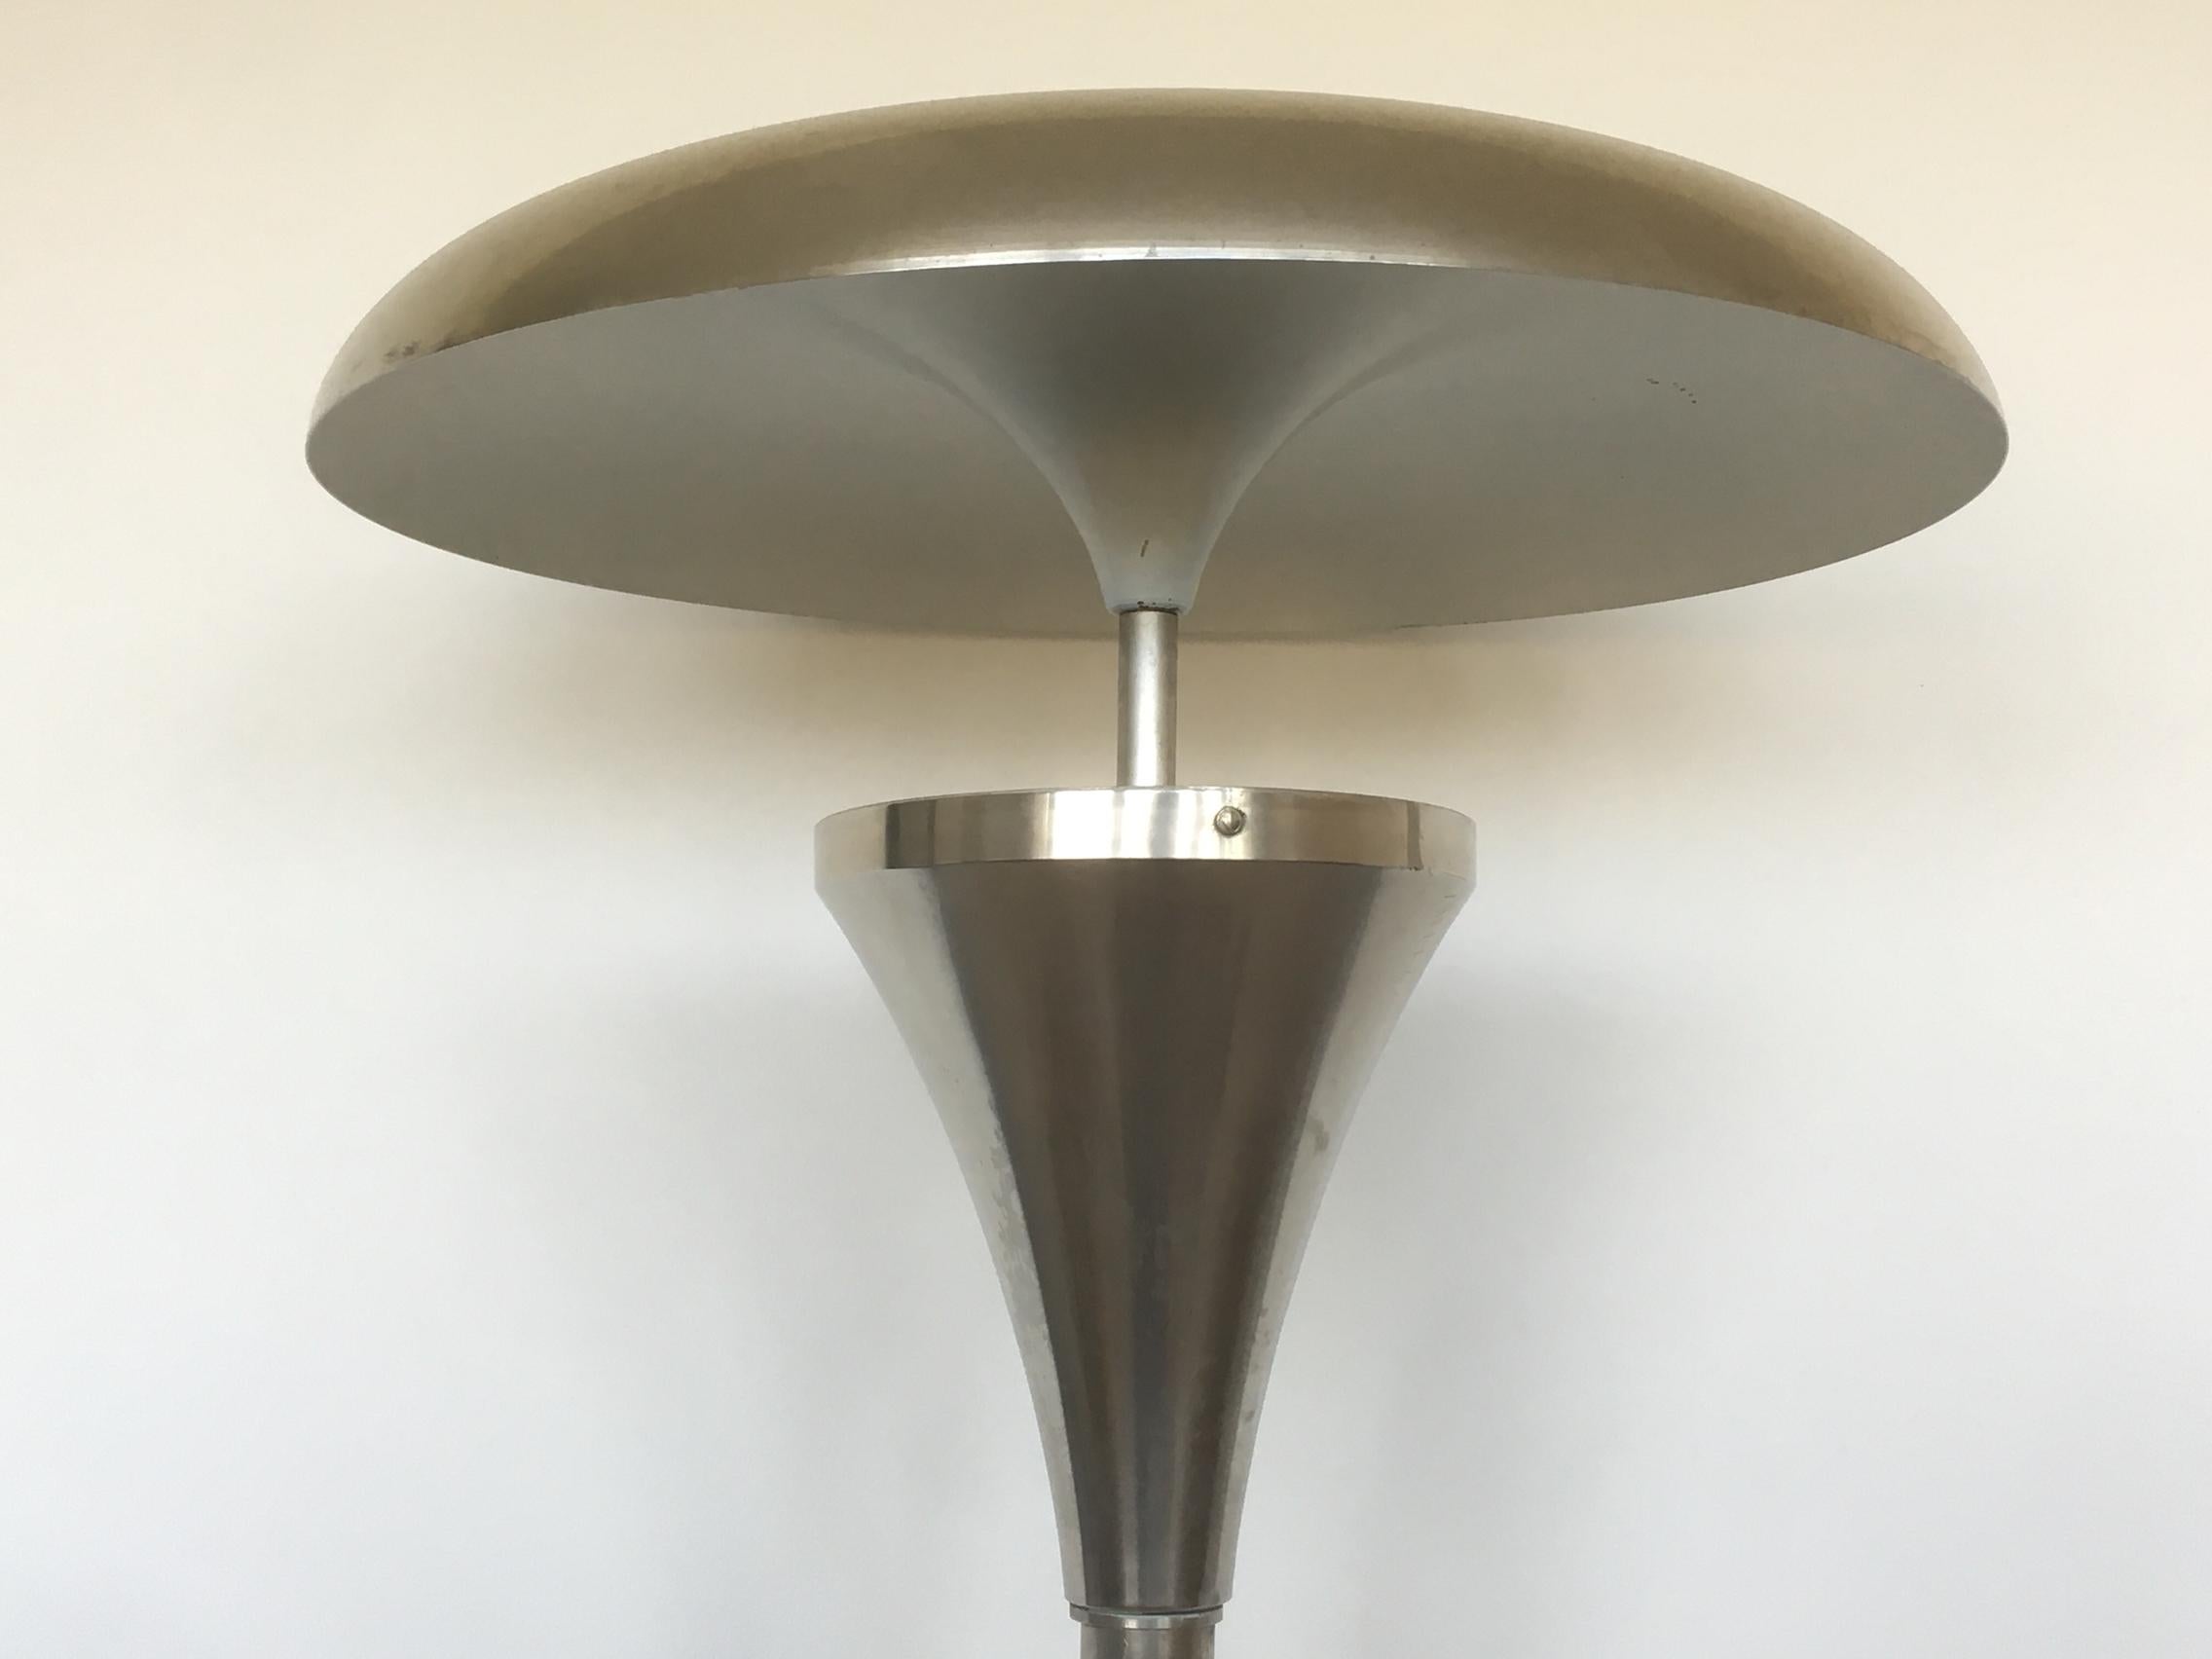 Czech Rare Design Bauhaus Floor Lamp, 1930s / Anýž / Functionalism